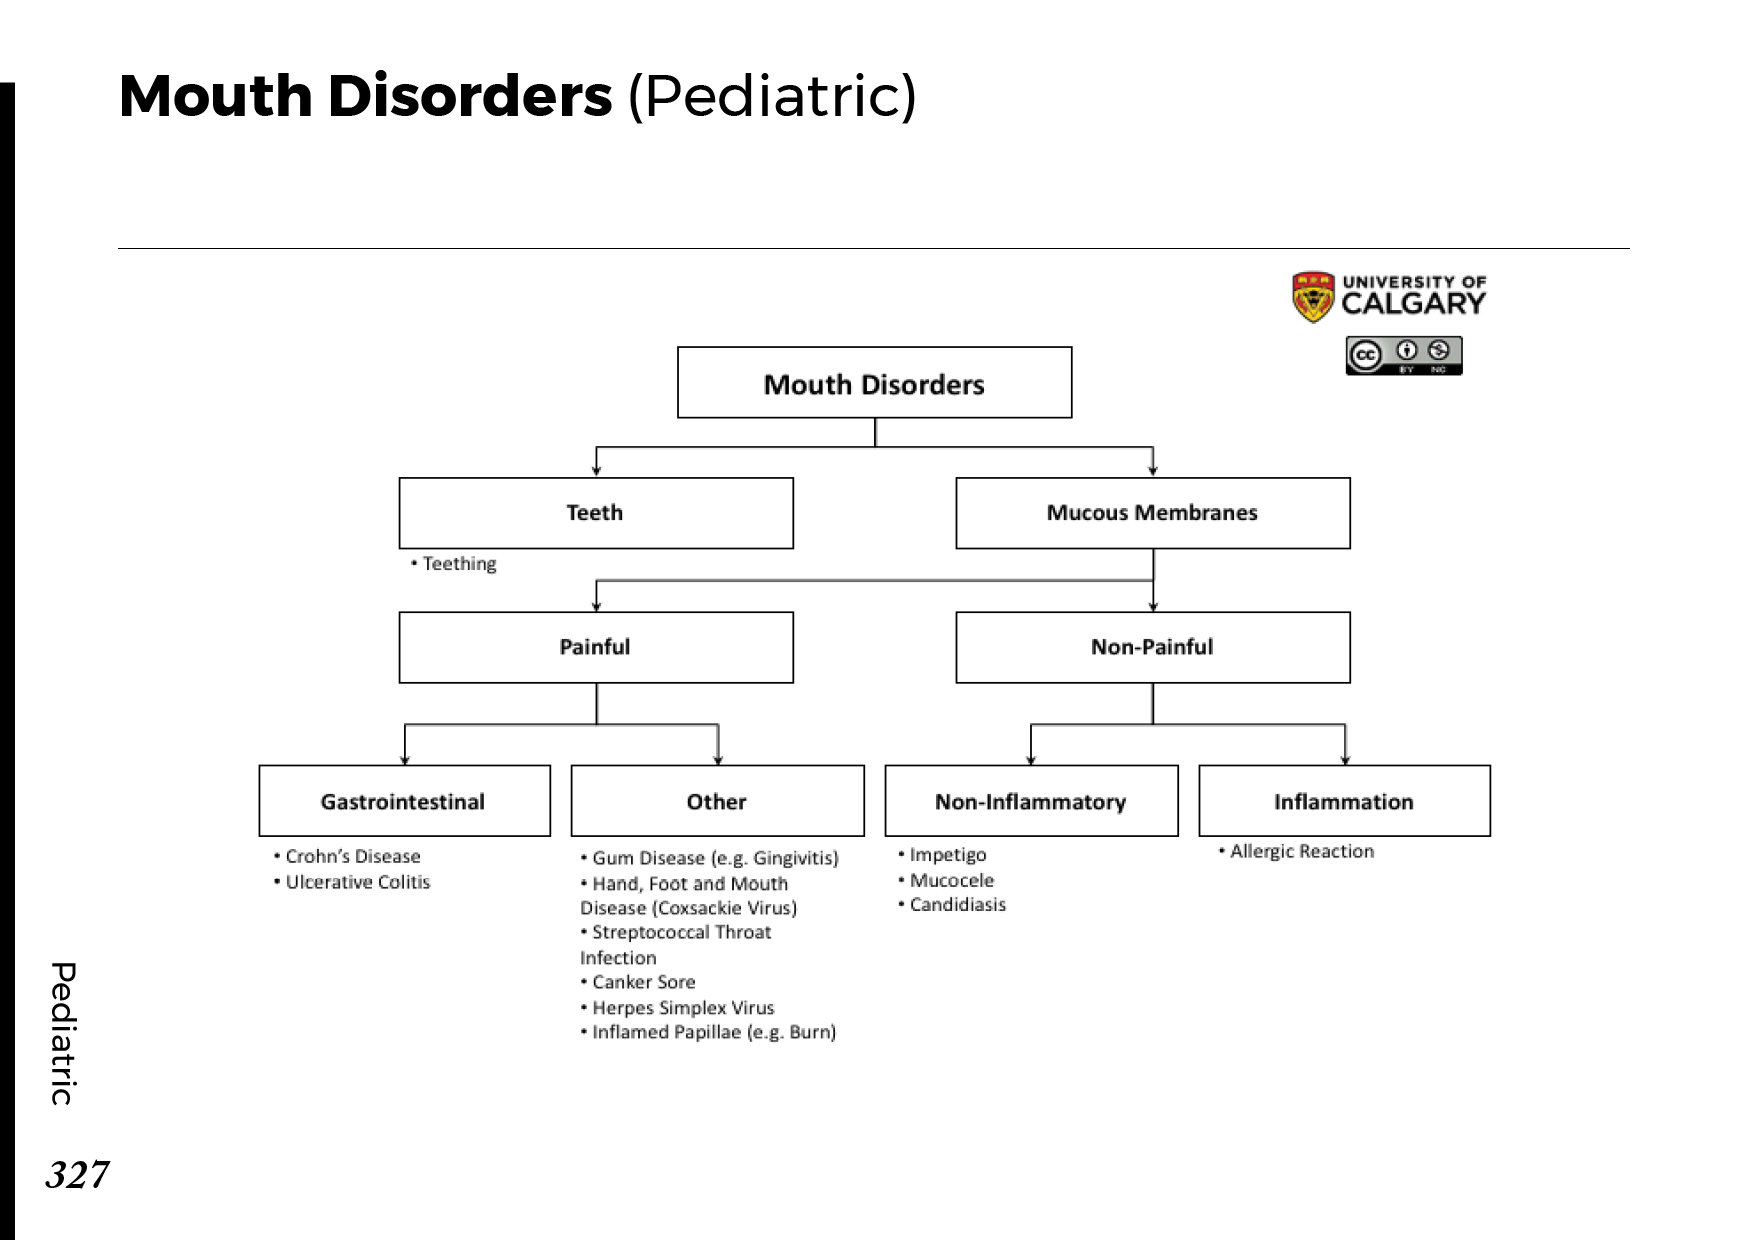 MOUTH DISORDERS: PEDIATRIC Scheme